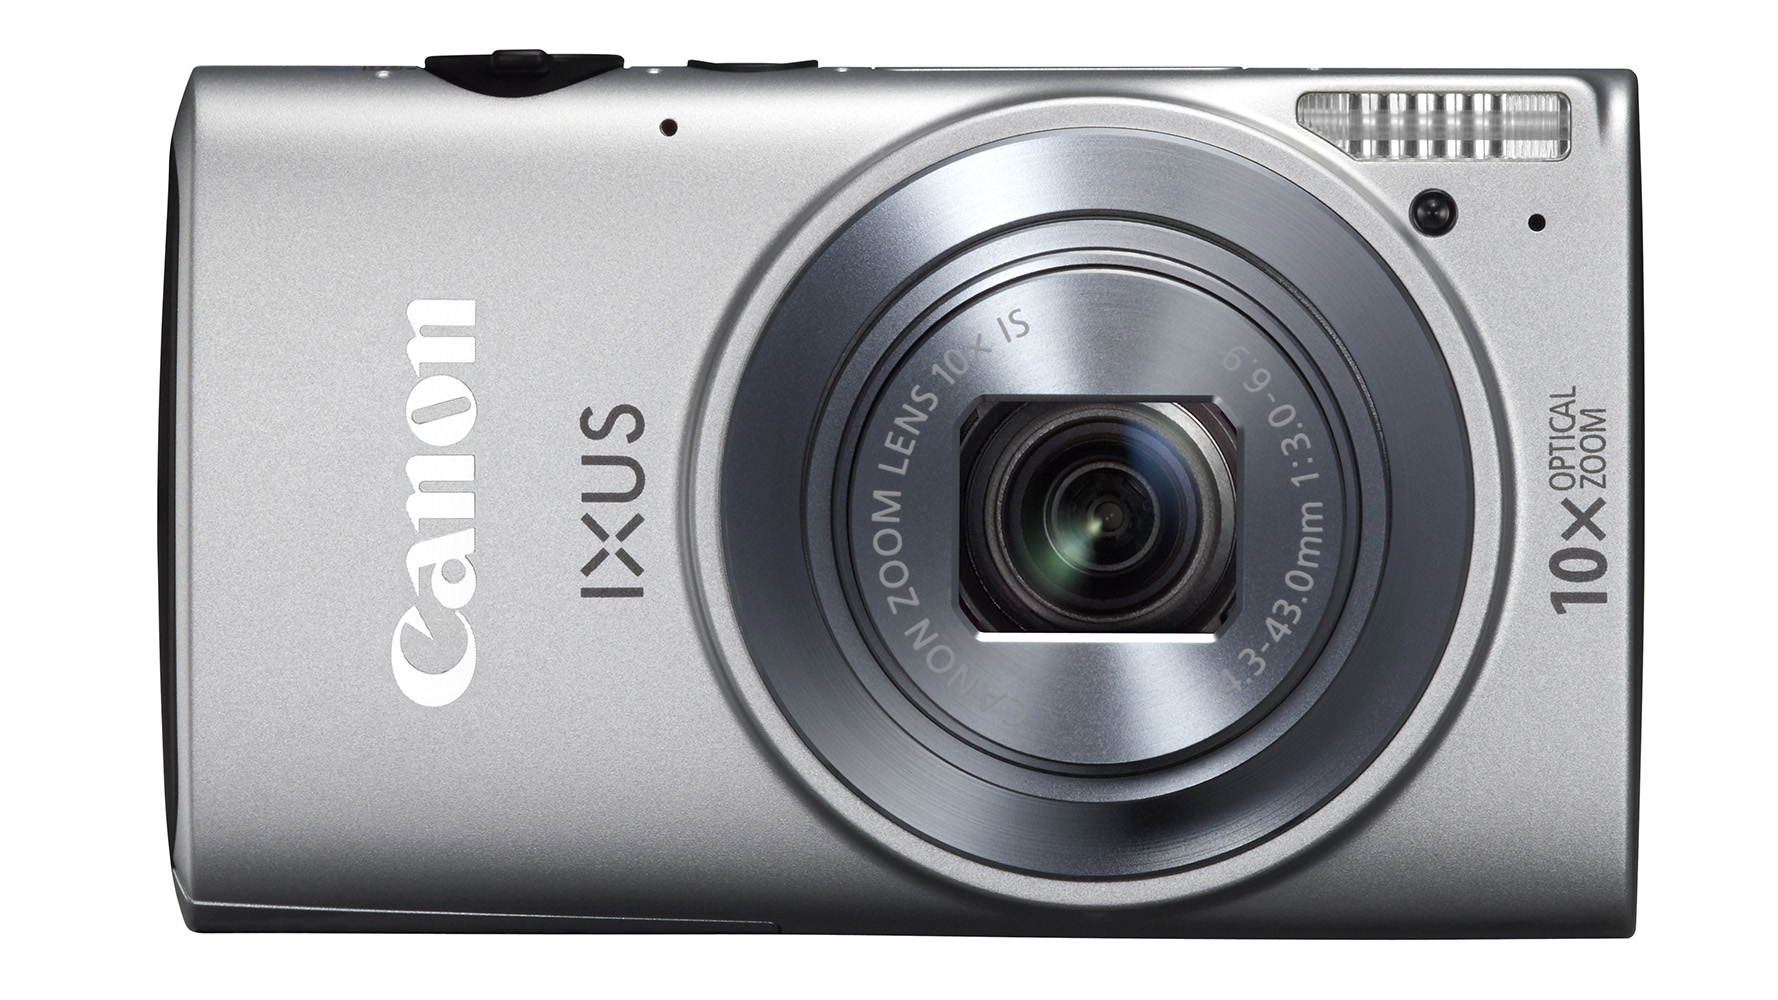 Canon IXUS 150 review